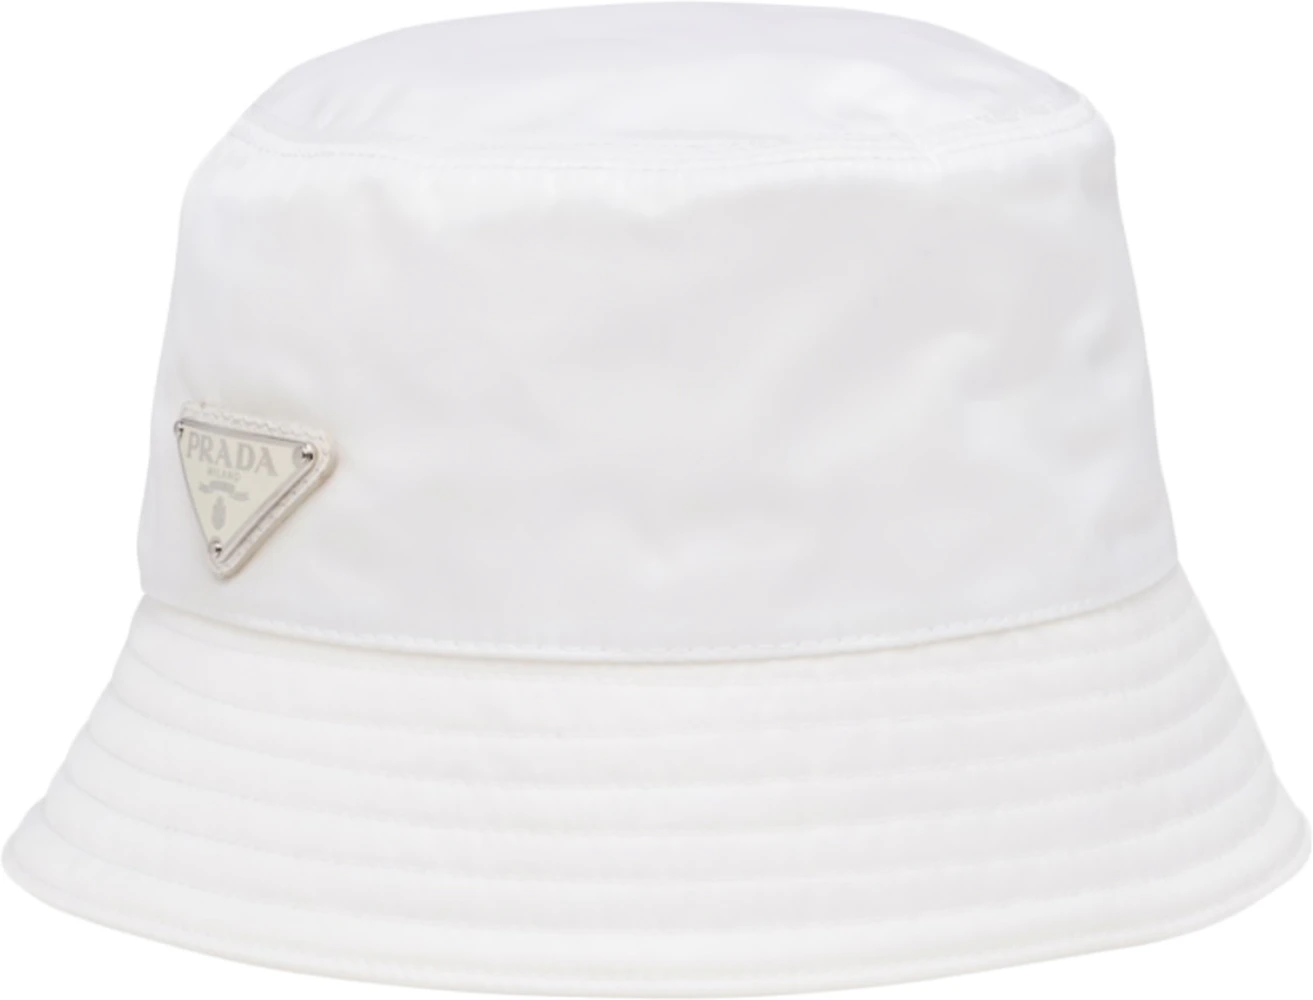 Authentic Prada Nylon Bucket Pink Hat Size S/M